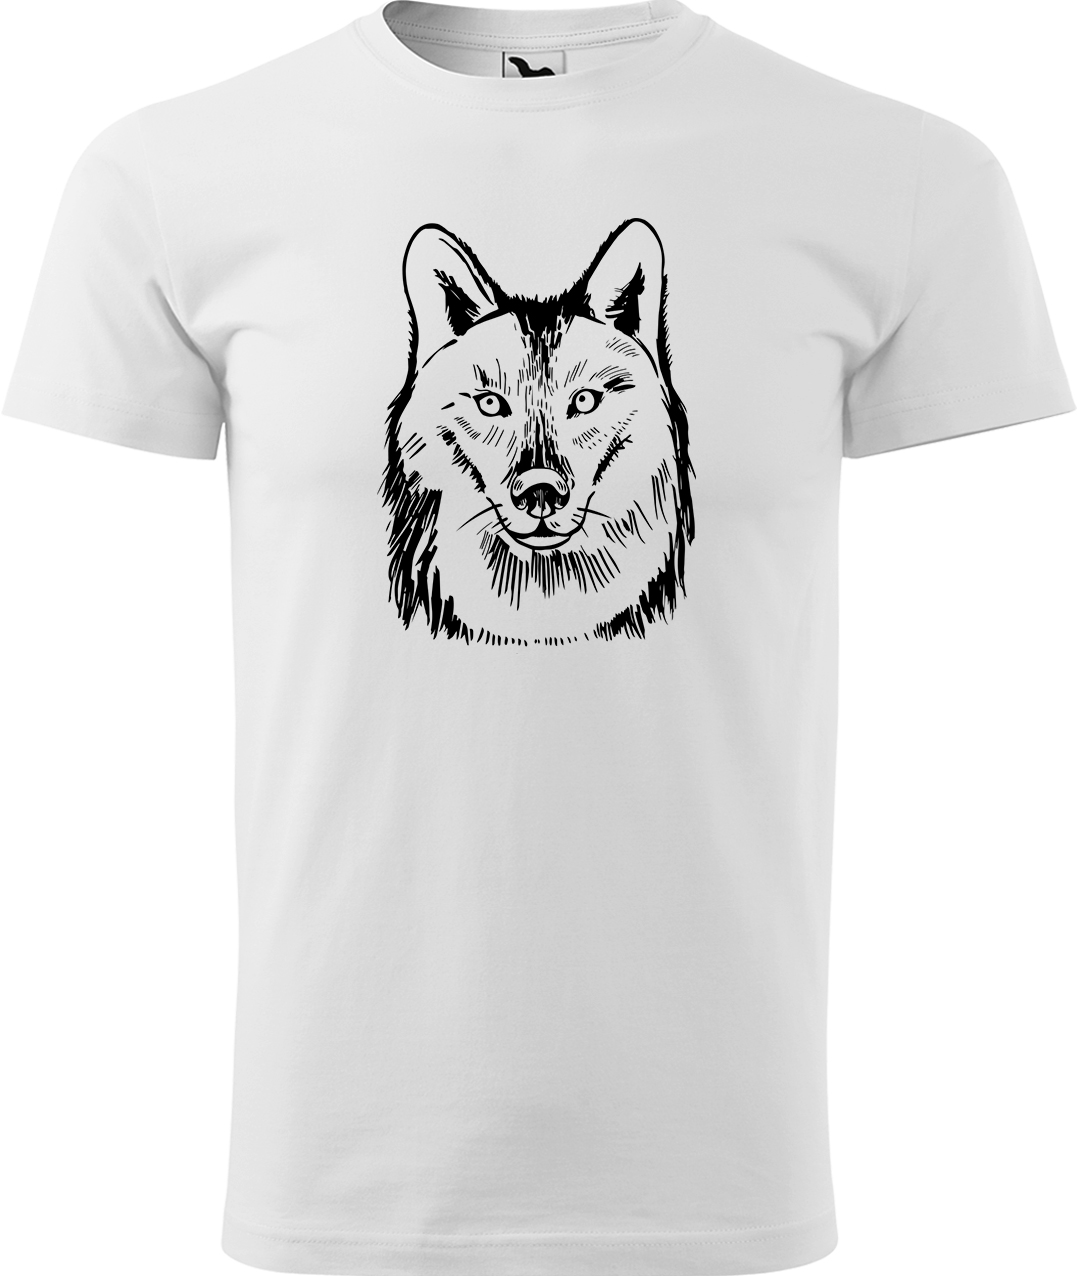 Pánské tričko s vlkem - Kresba vlka Velikost: L, Barva: Bílá (00), Střih: pánský